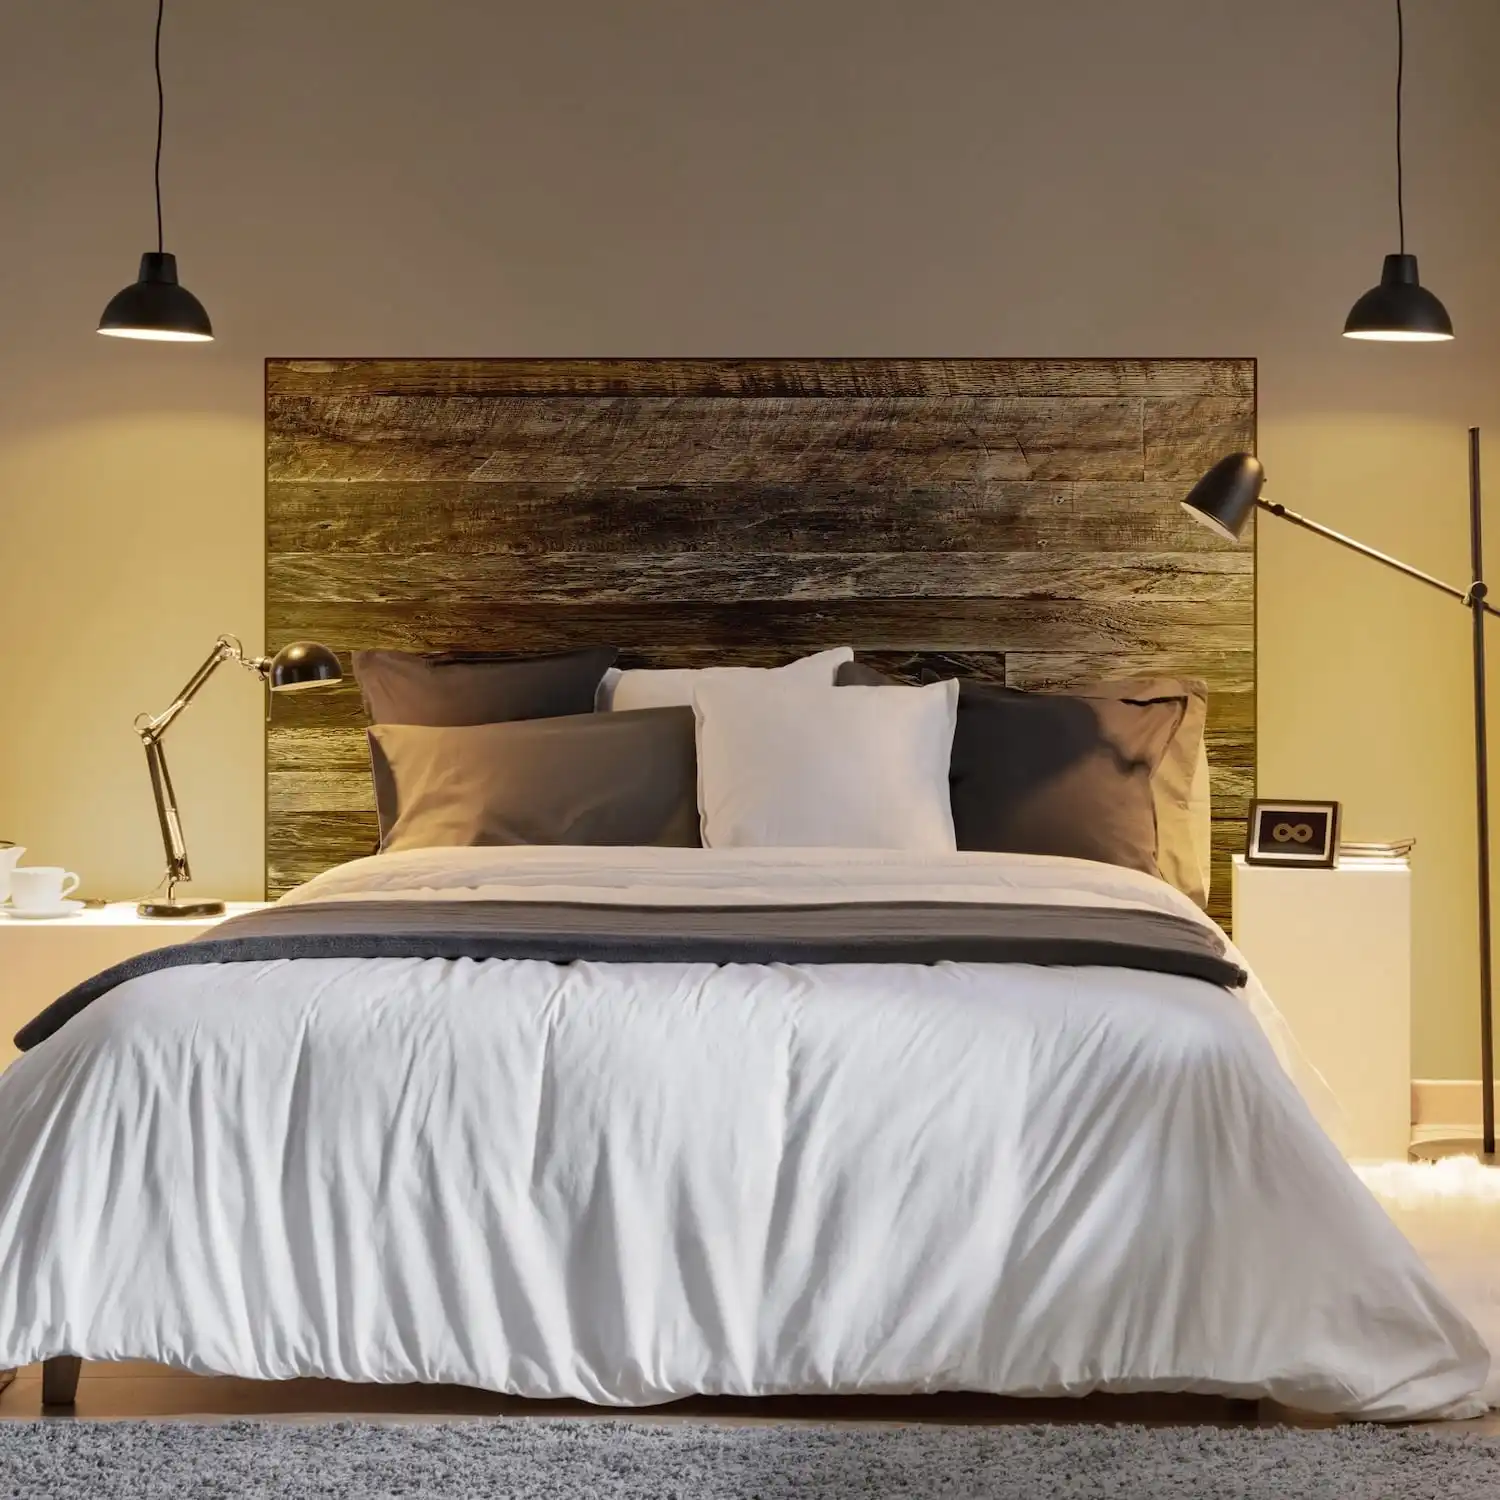  Une chambre moderne comprenant un grand lit avec une literie blanche et grise, deux suspensions suspendues et une tête de lit en bois ancien. 